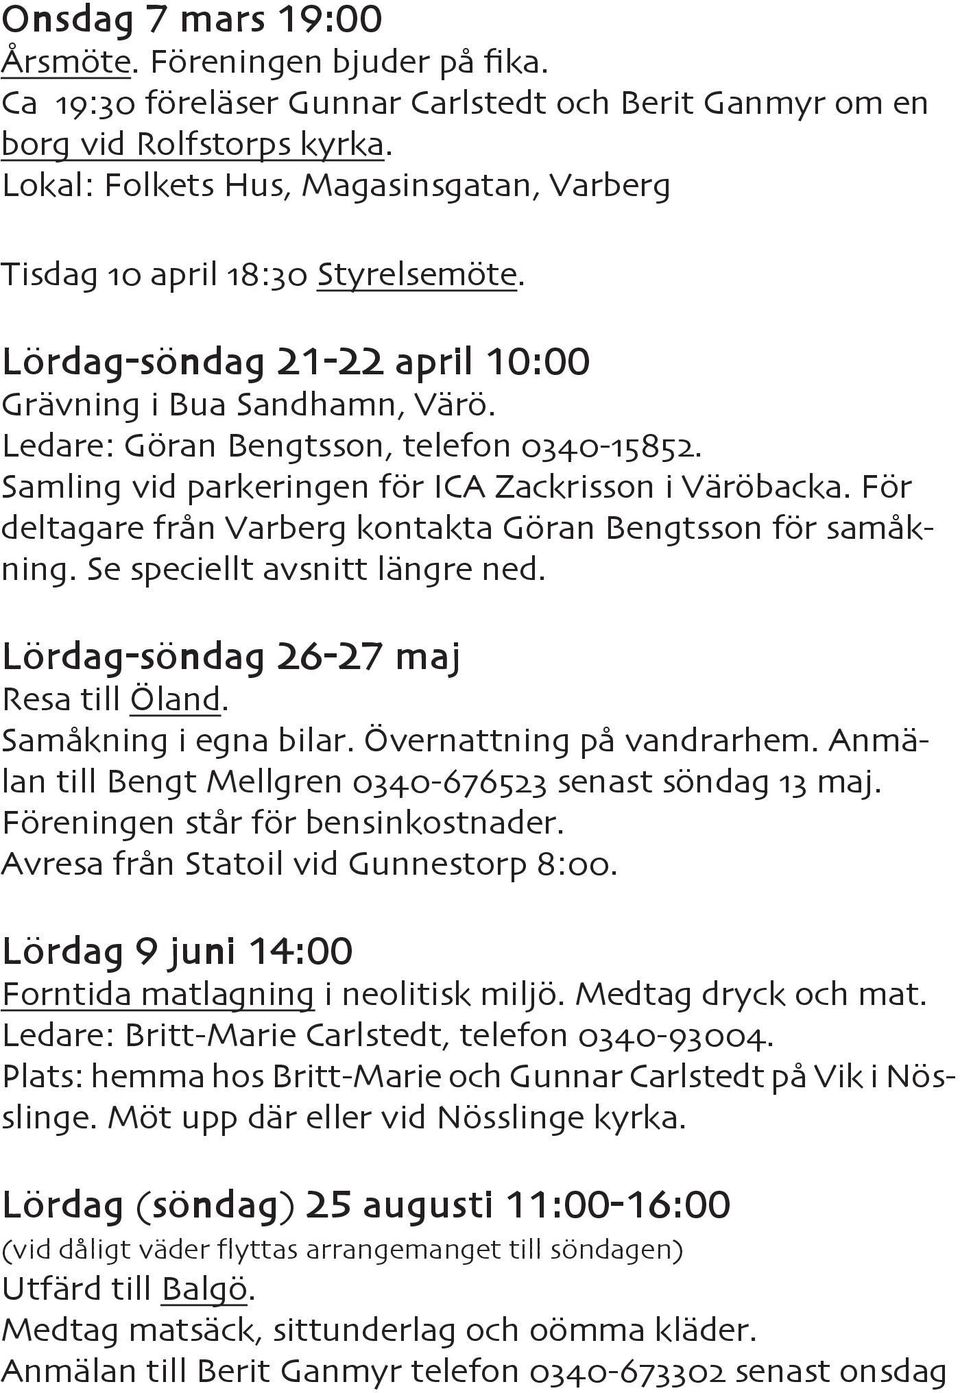 Samling vid parkeringen för ICA Zackrisson i Väröbacka. För deltagare från Varberg kontakta Göran Bengtsson för samåkning. Se speciellt avsnitt längre ned. Lördag-söndag 26-27 maj Resa till Öland.